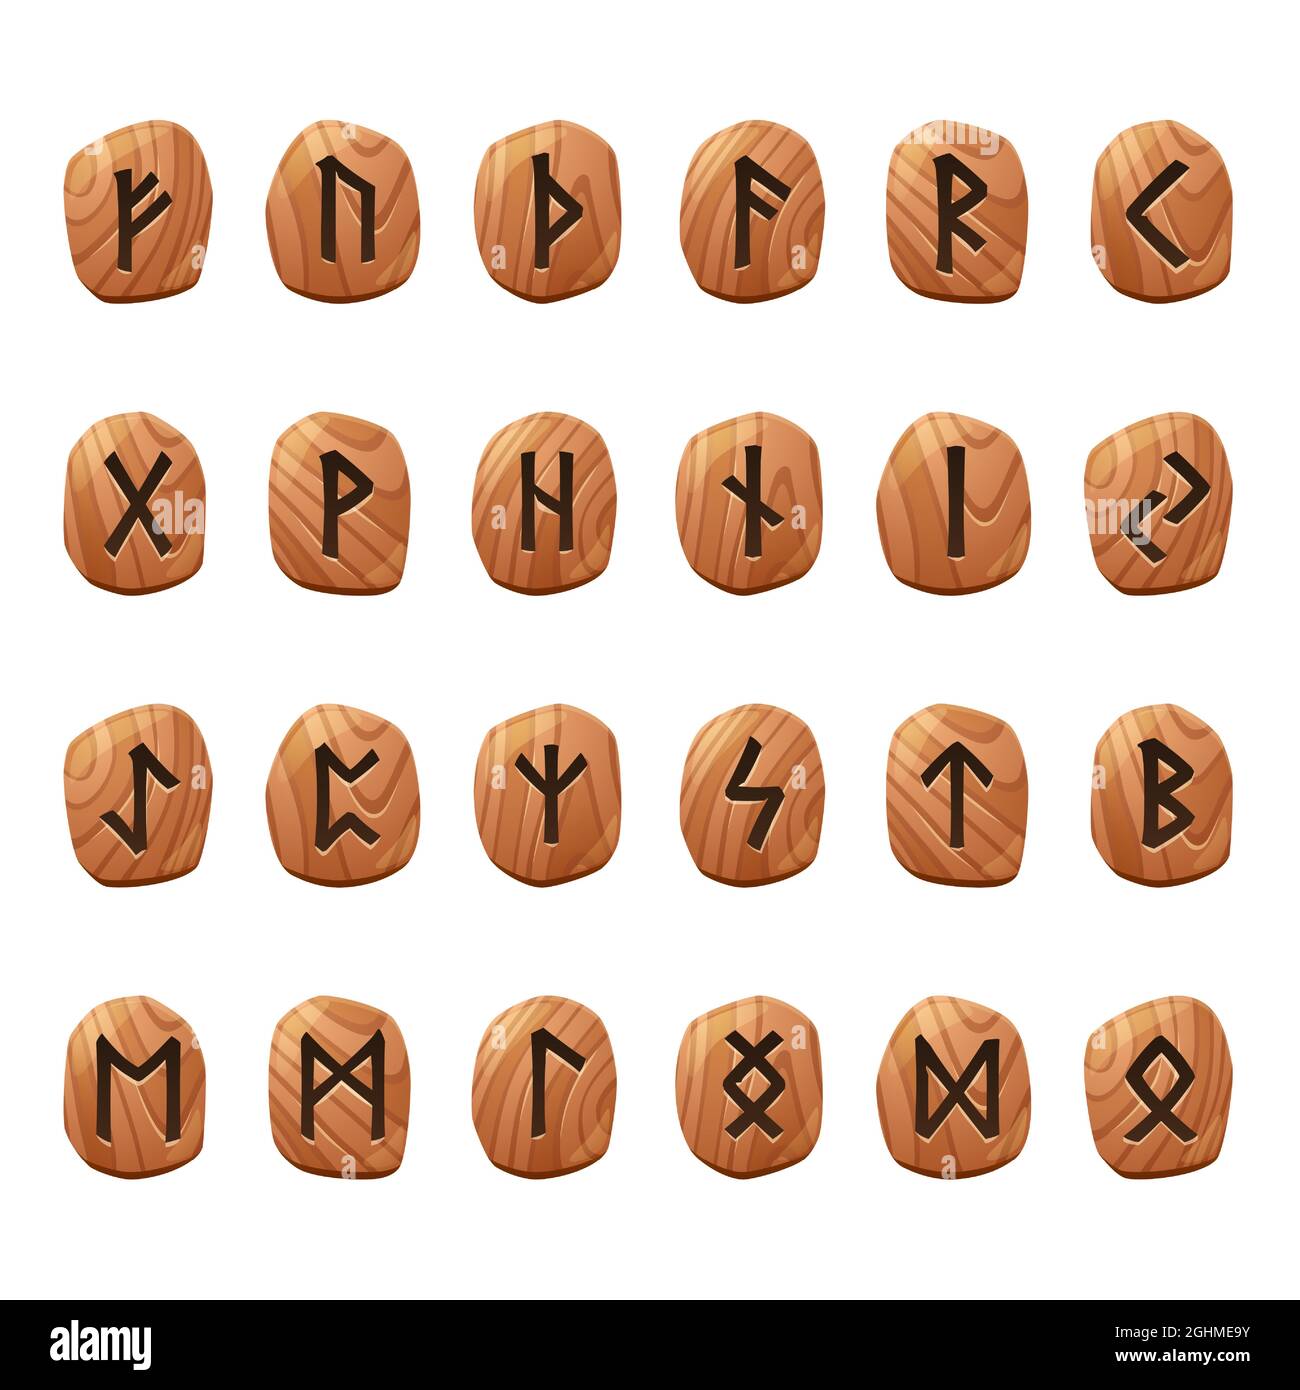 Set di rune di gioco, alfabeto antico nordico, futark celtico vichingo simboli incisi su pezzi di legno. Segni occultuali esoterici, elementi di progettazione di interfacce utente mistiche o gui, illustrazione vettoriale di cartoni animati isolati, icone Illustrazione Vettoriale